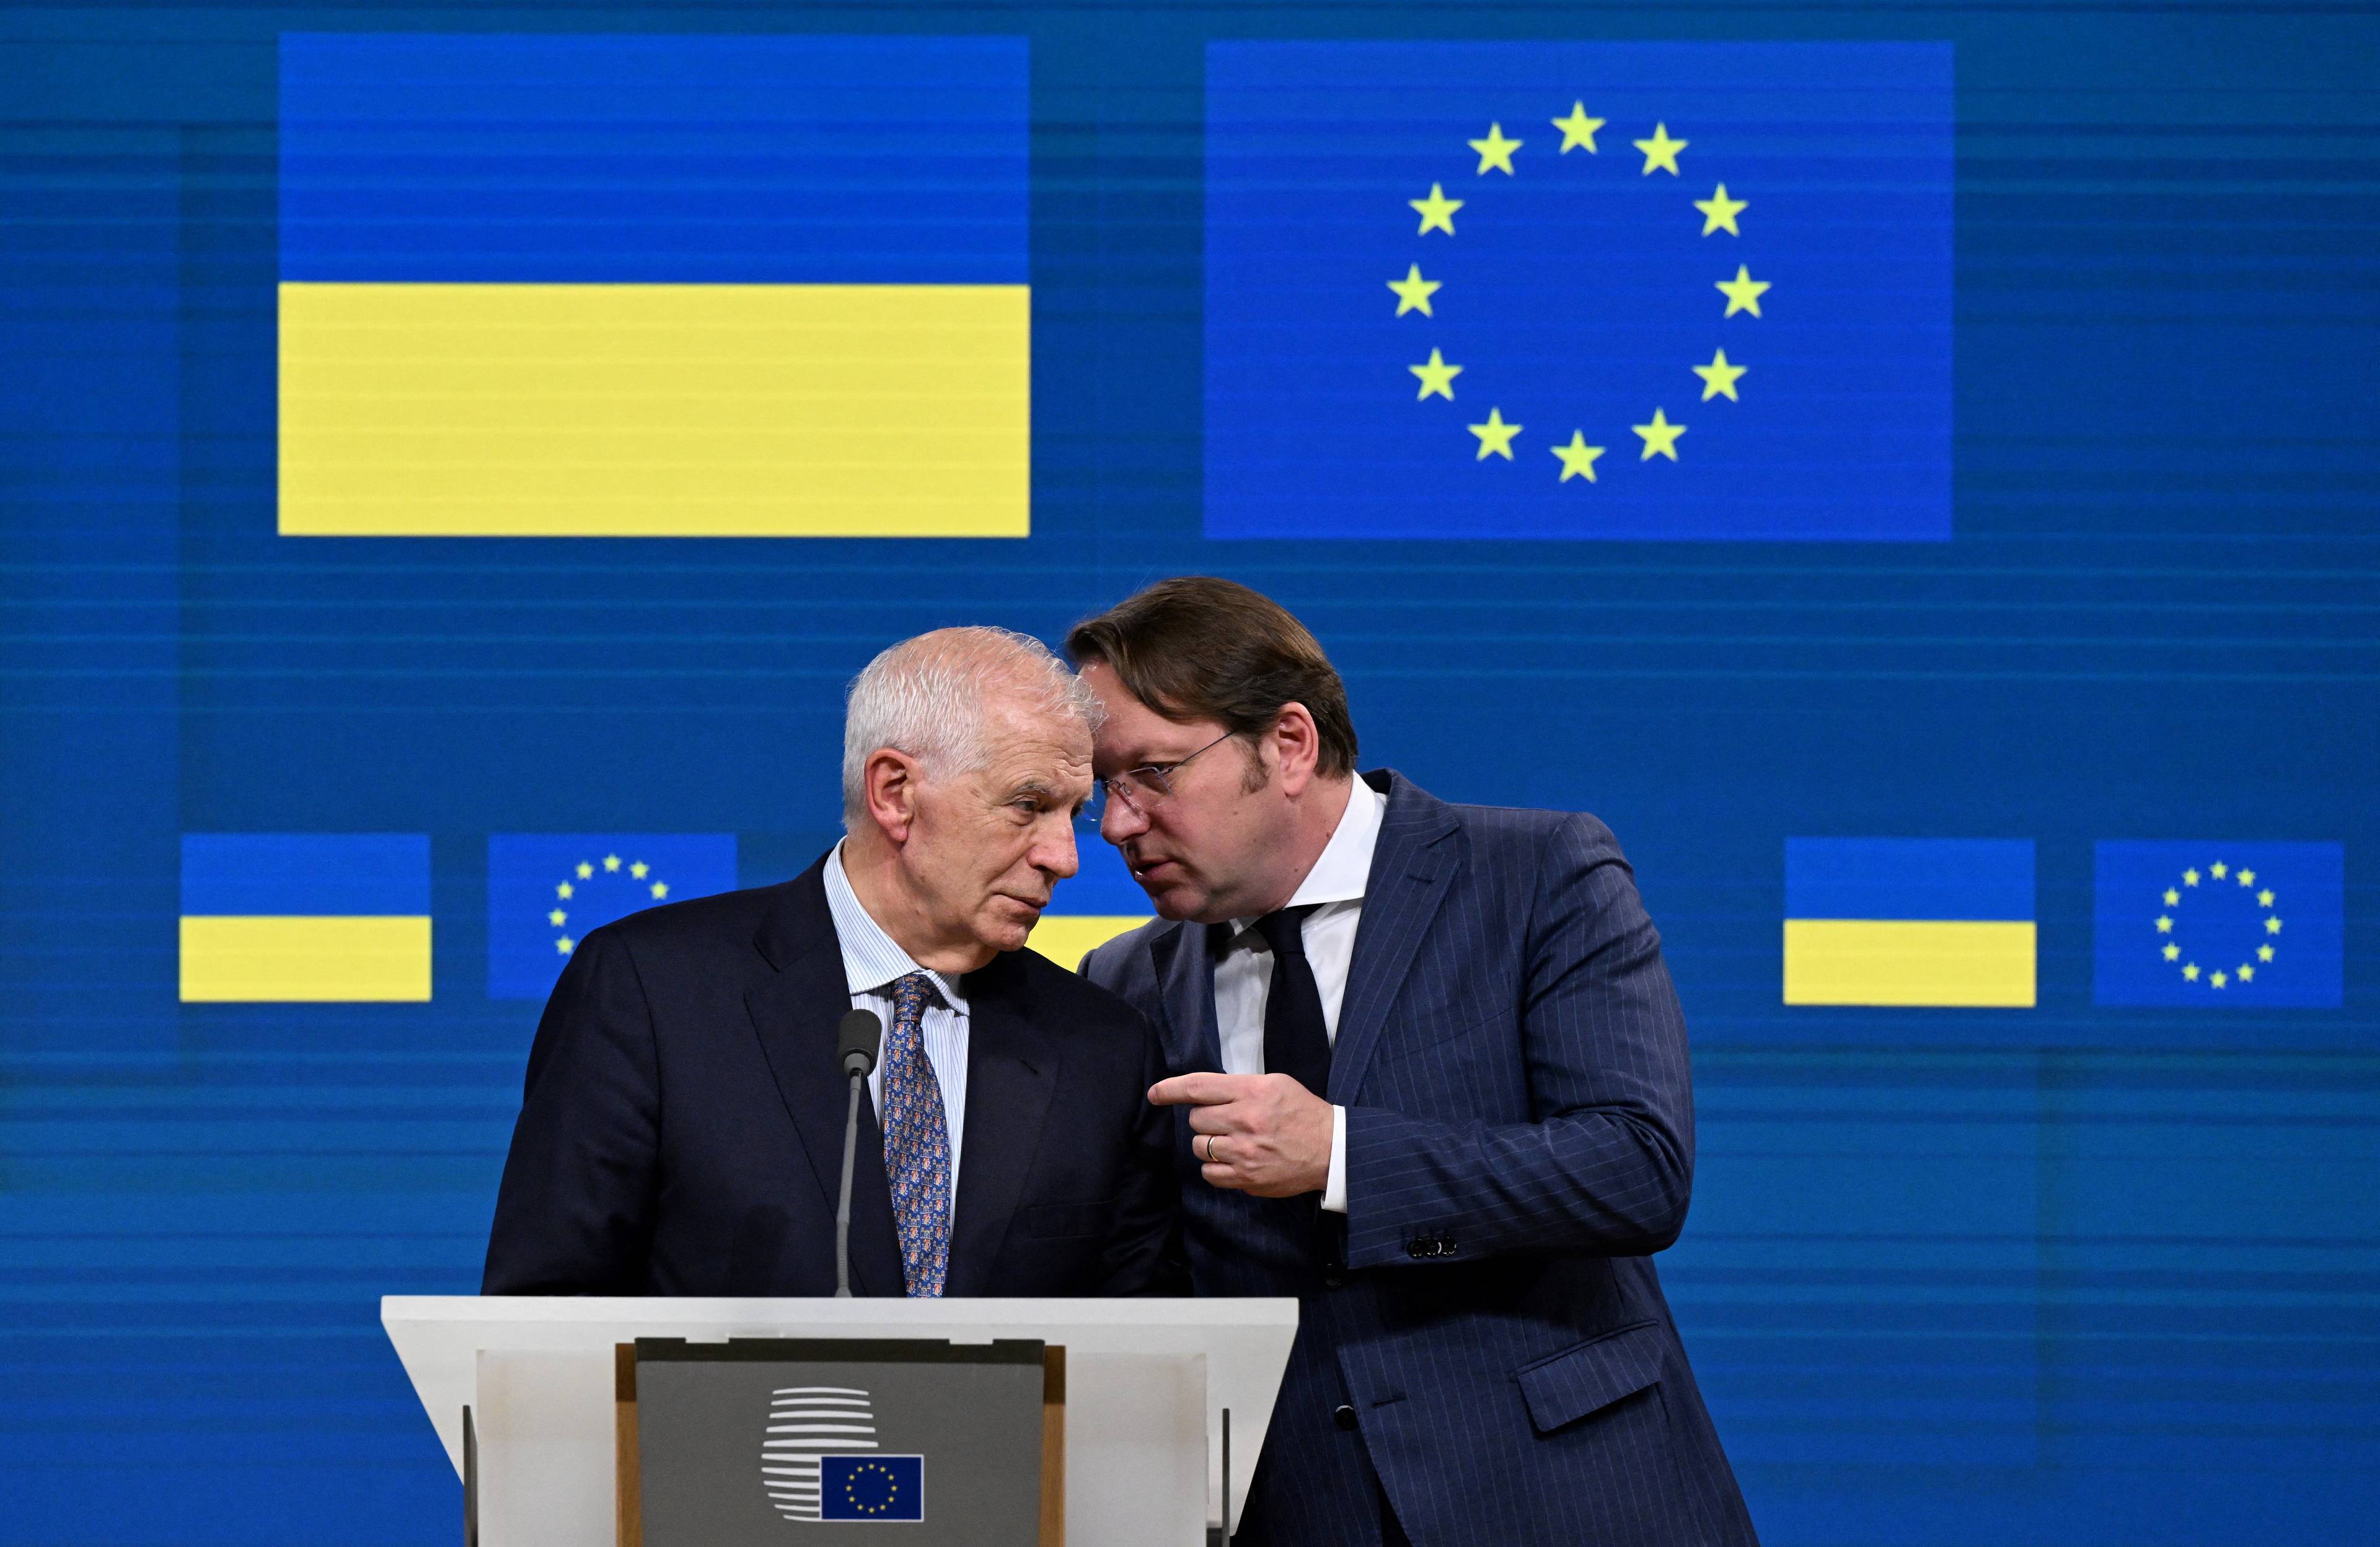 Na zdjęciu jest dwóch mężczyzn. W tle są flagi Ukrainy i Unii Europejskiej. Jeden z mężczyzn coś mówi na ucho innemu. Są to przedstawiciele Unii Europejskiej